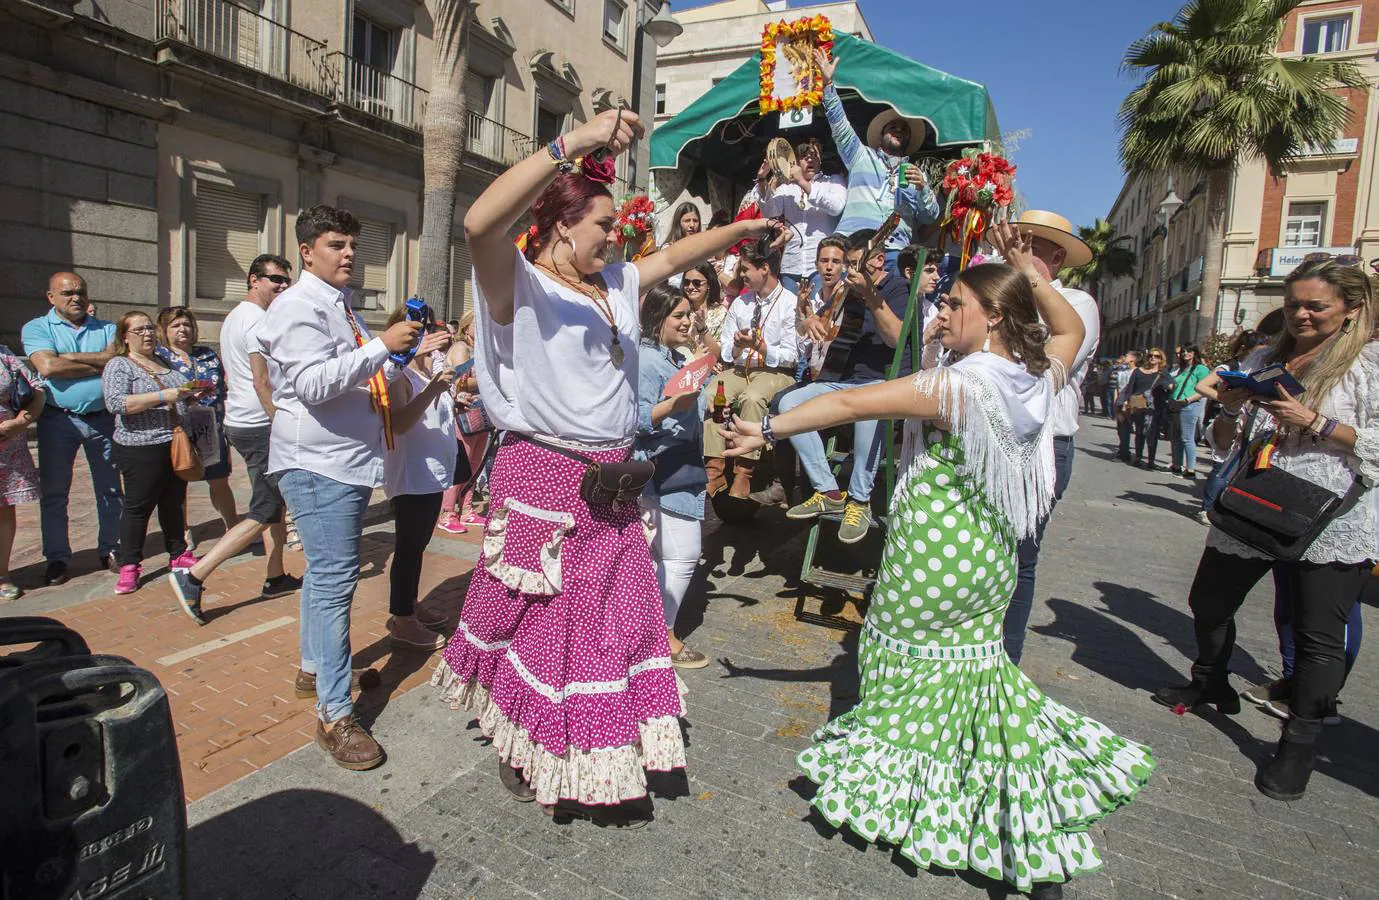 El Rocío 2018 en imágenes: salida de la Hermandad de Emigrantes en Huelva